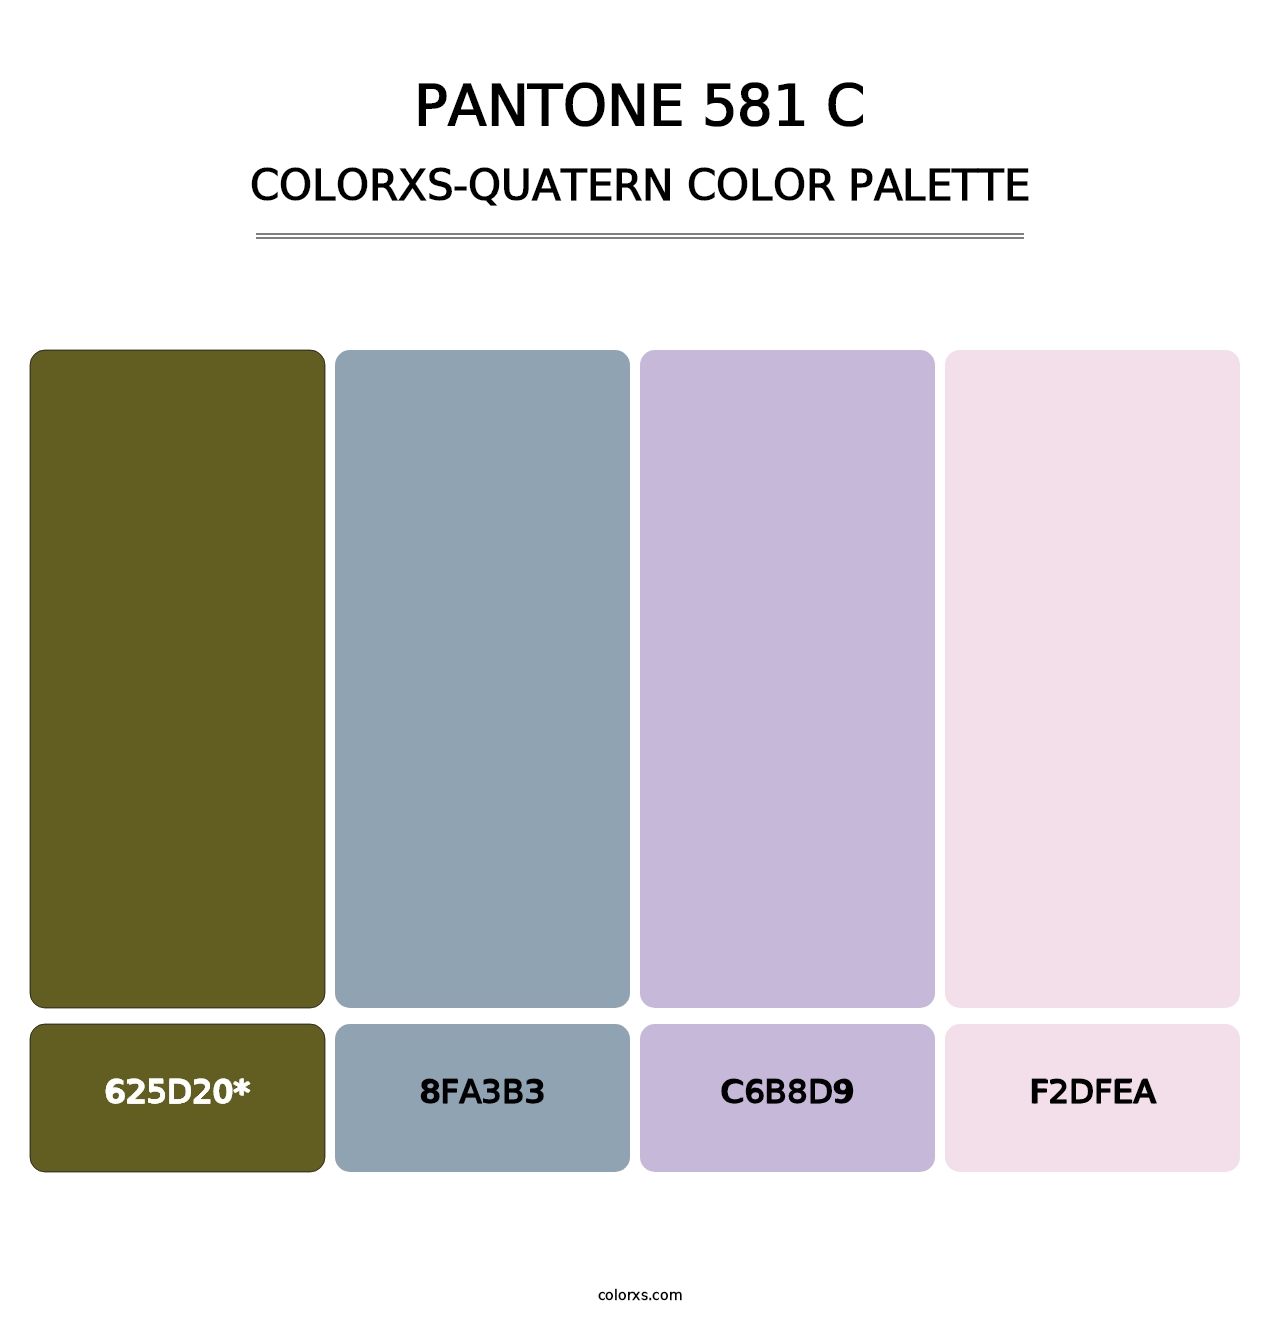 PANTONE 581 C - Colorxs Quatern Palette